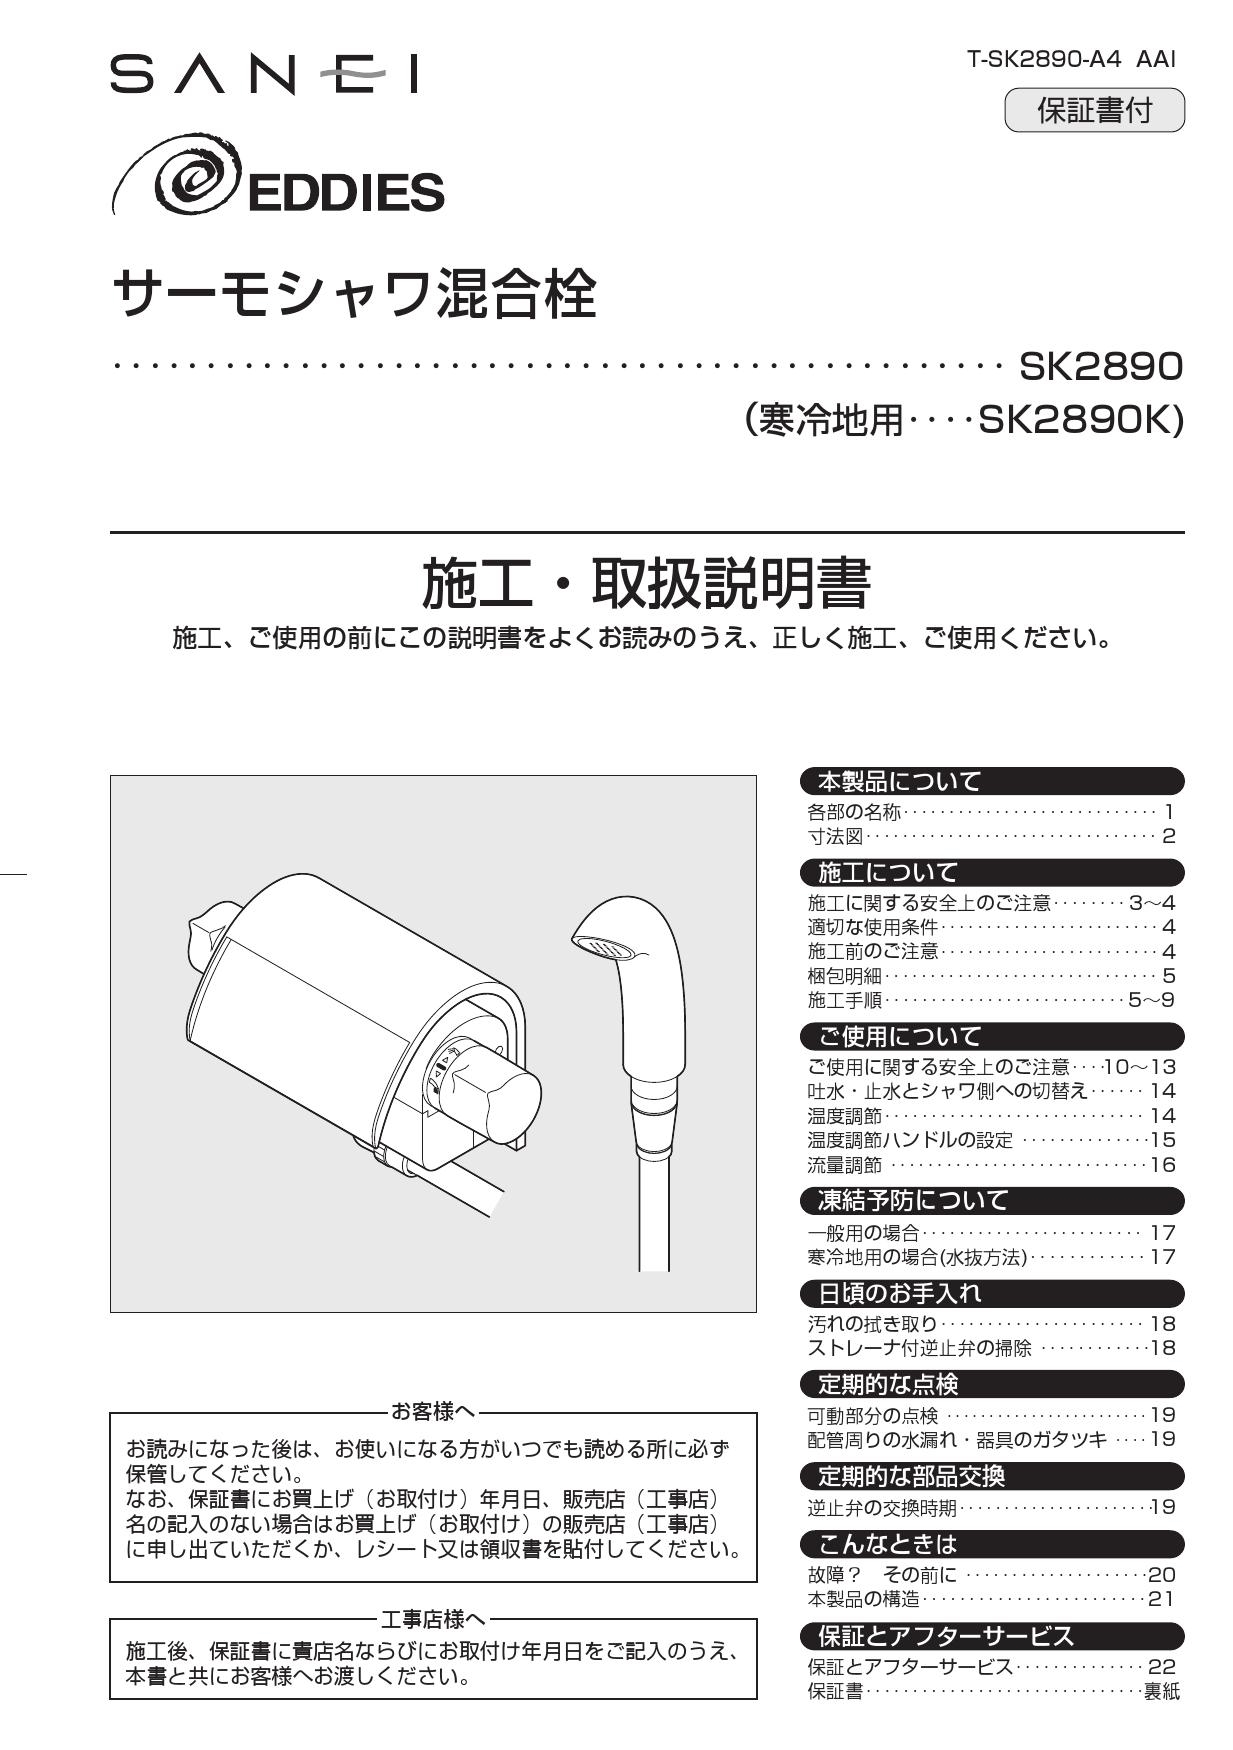 世界的に 三栄 SANEI EDDIES サーモシャワー混合栓 SK2890-13